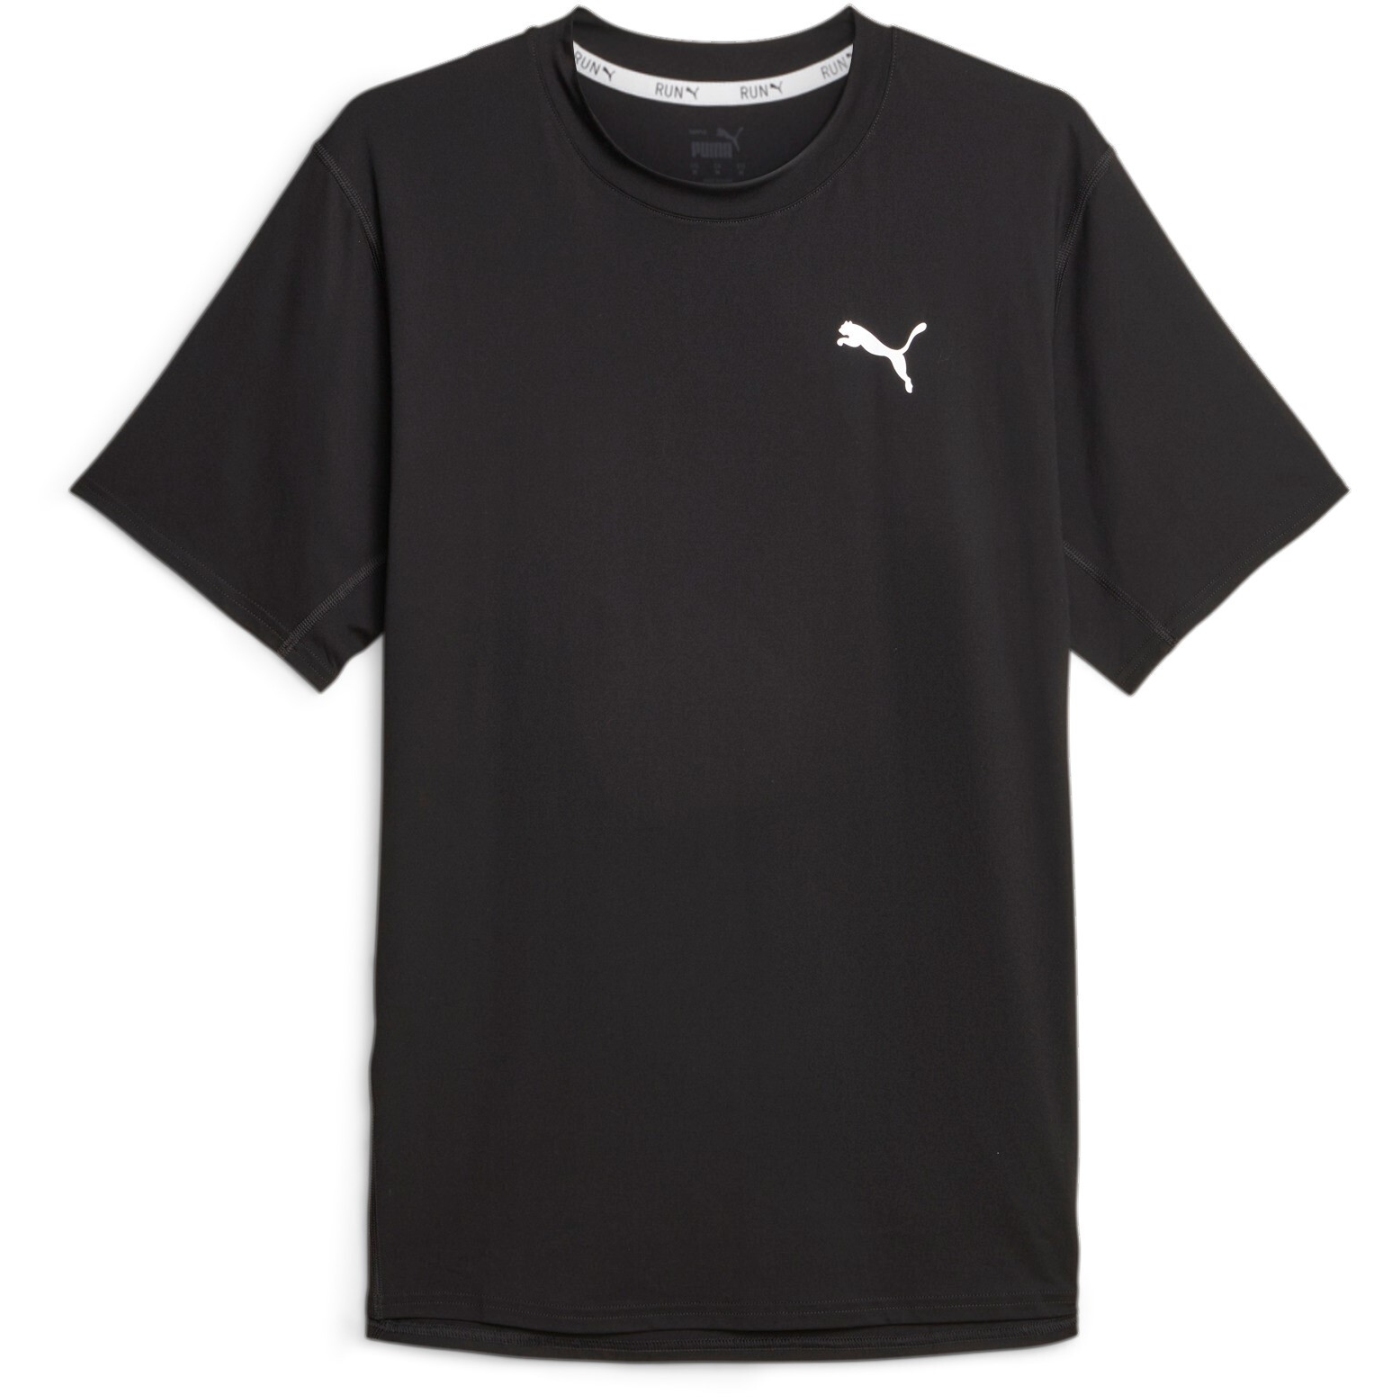 Produktbild von Puma Cloudspun Lauf-T-Shirt Herren - Puma Black